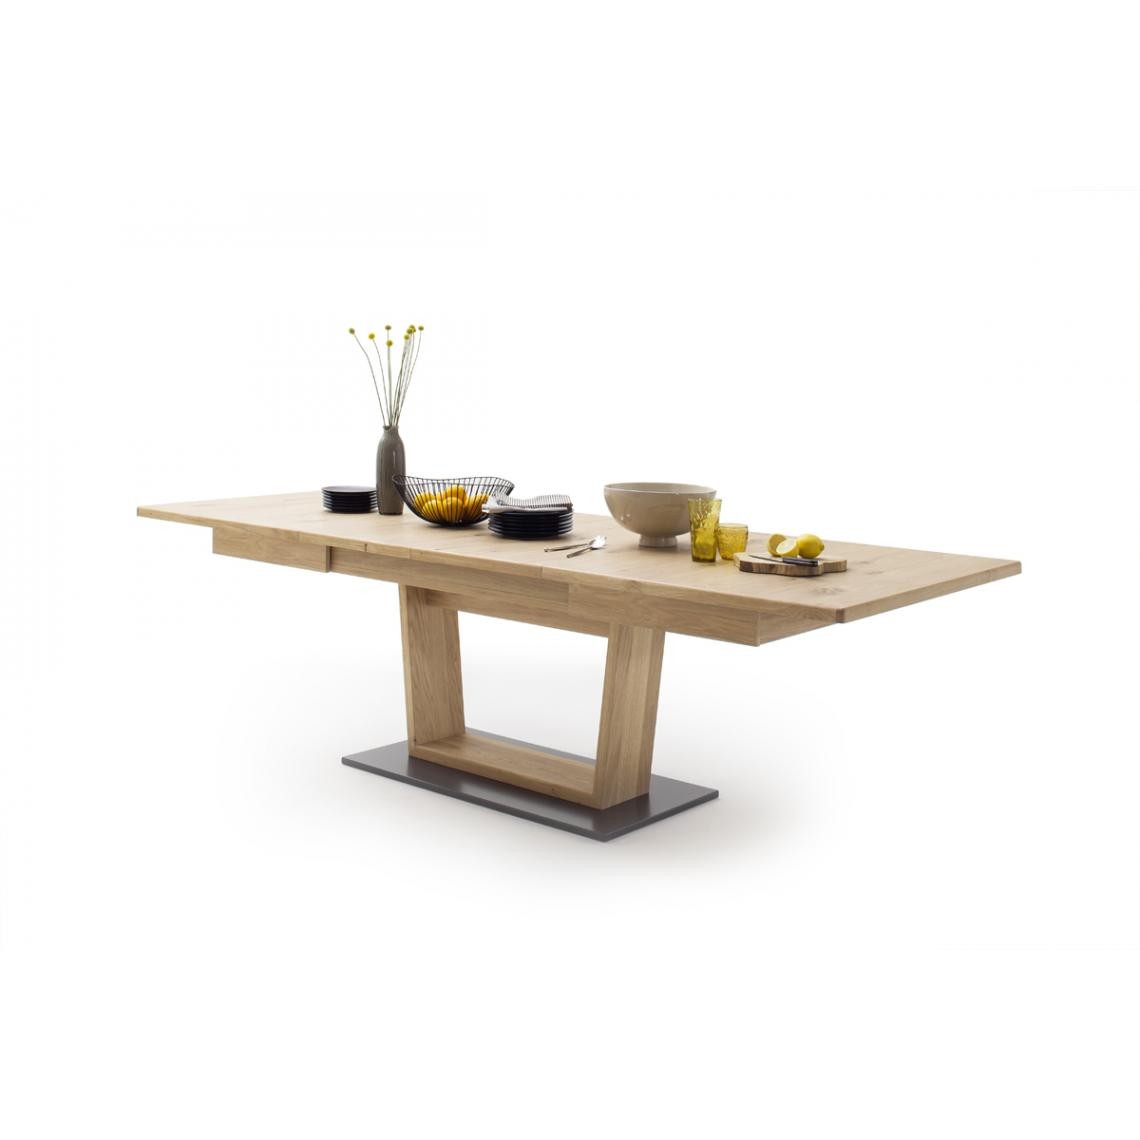 Pegane - Table rectangulaire en chêne noueux - L180-280 x H77 x P100 cm - Tables à manger